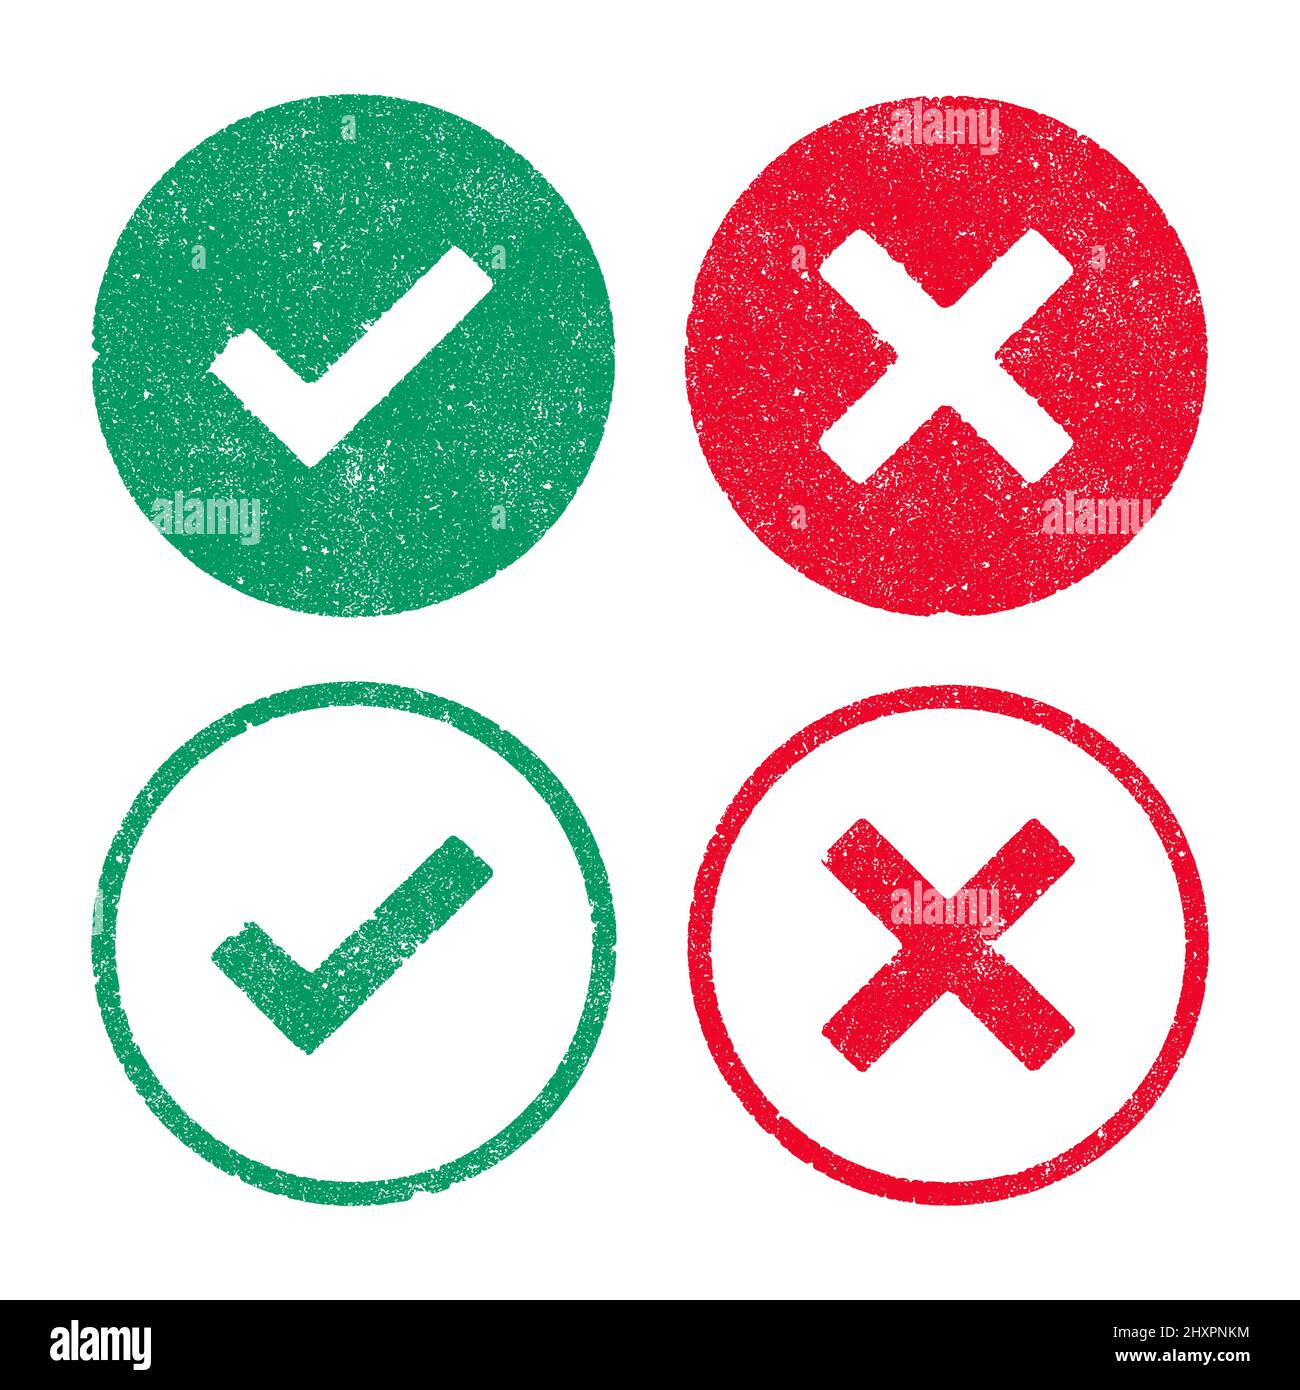 Illustration vectorielle des symboles de droite et de mauvais symboles en tampons d'encre verts et rouges Illustration de Vecteur